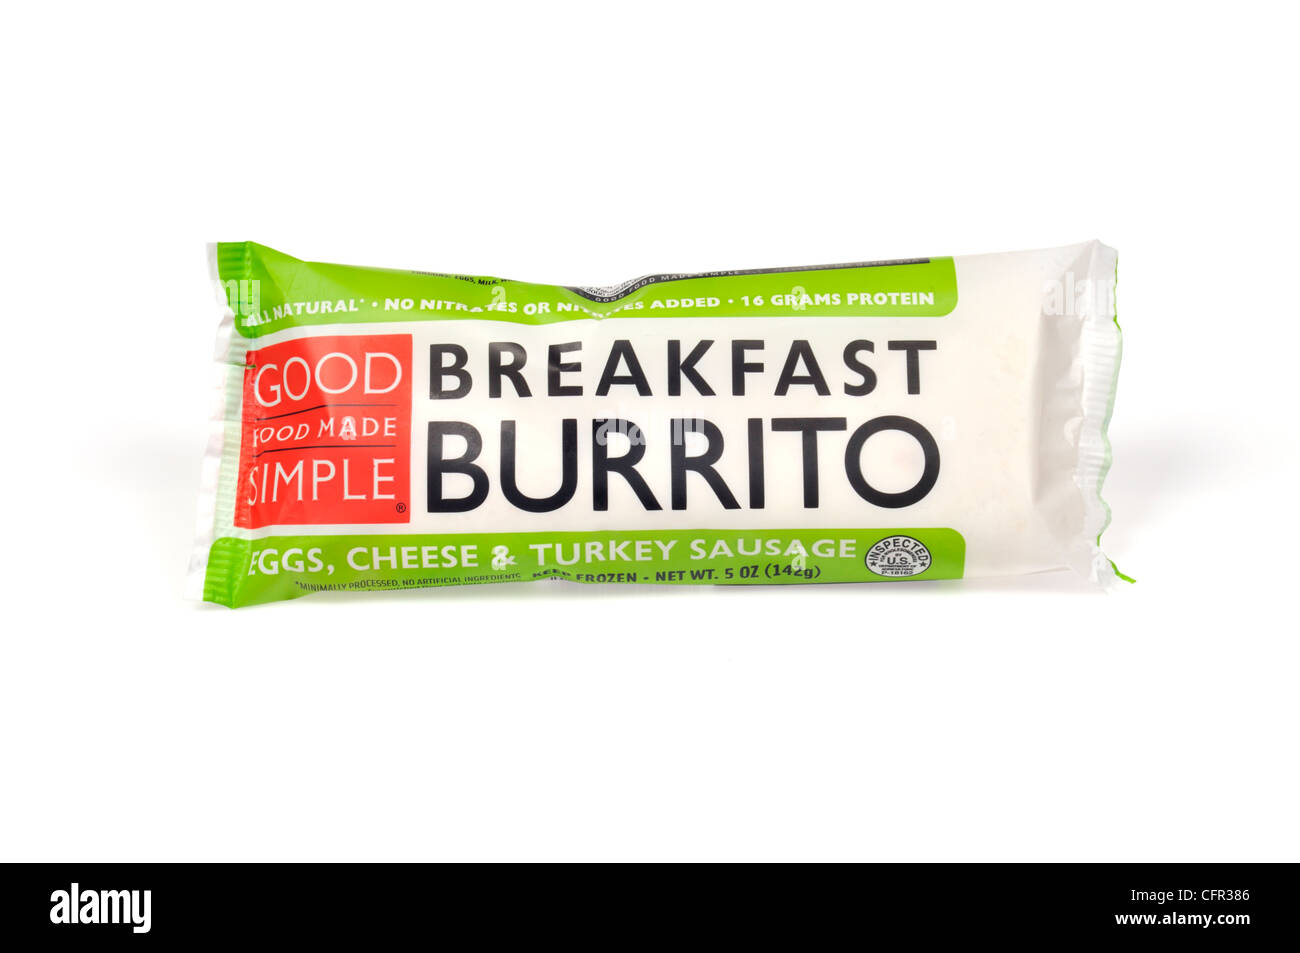 Verpackt frozen food Frühstück Burrito durch gutes Essen einfach gemacht mit Eiern, Käse und der Türkei Wurst auf weißem Hintergrund ausschneiden, USA Stockfoto